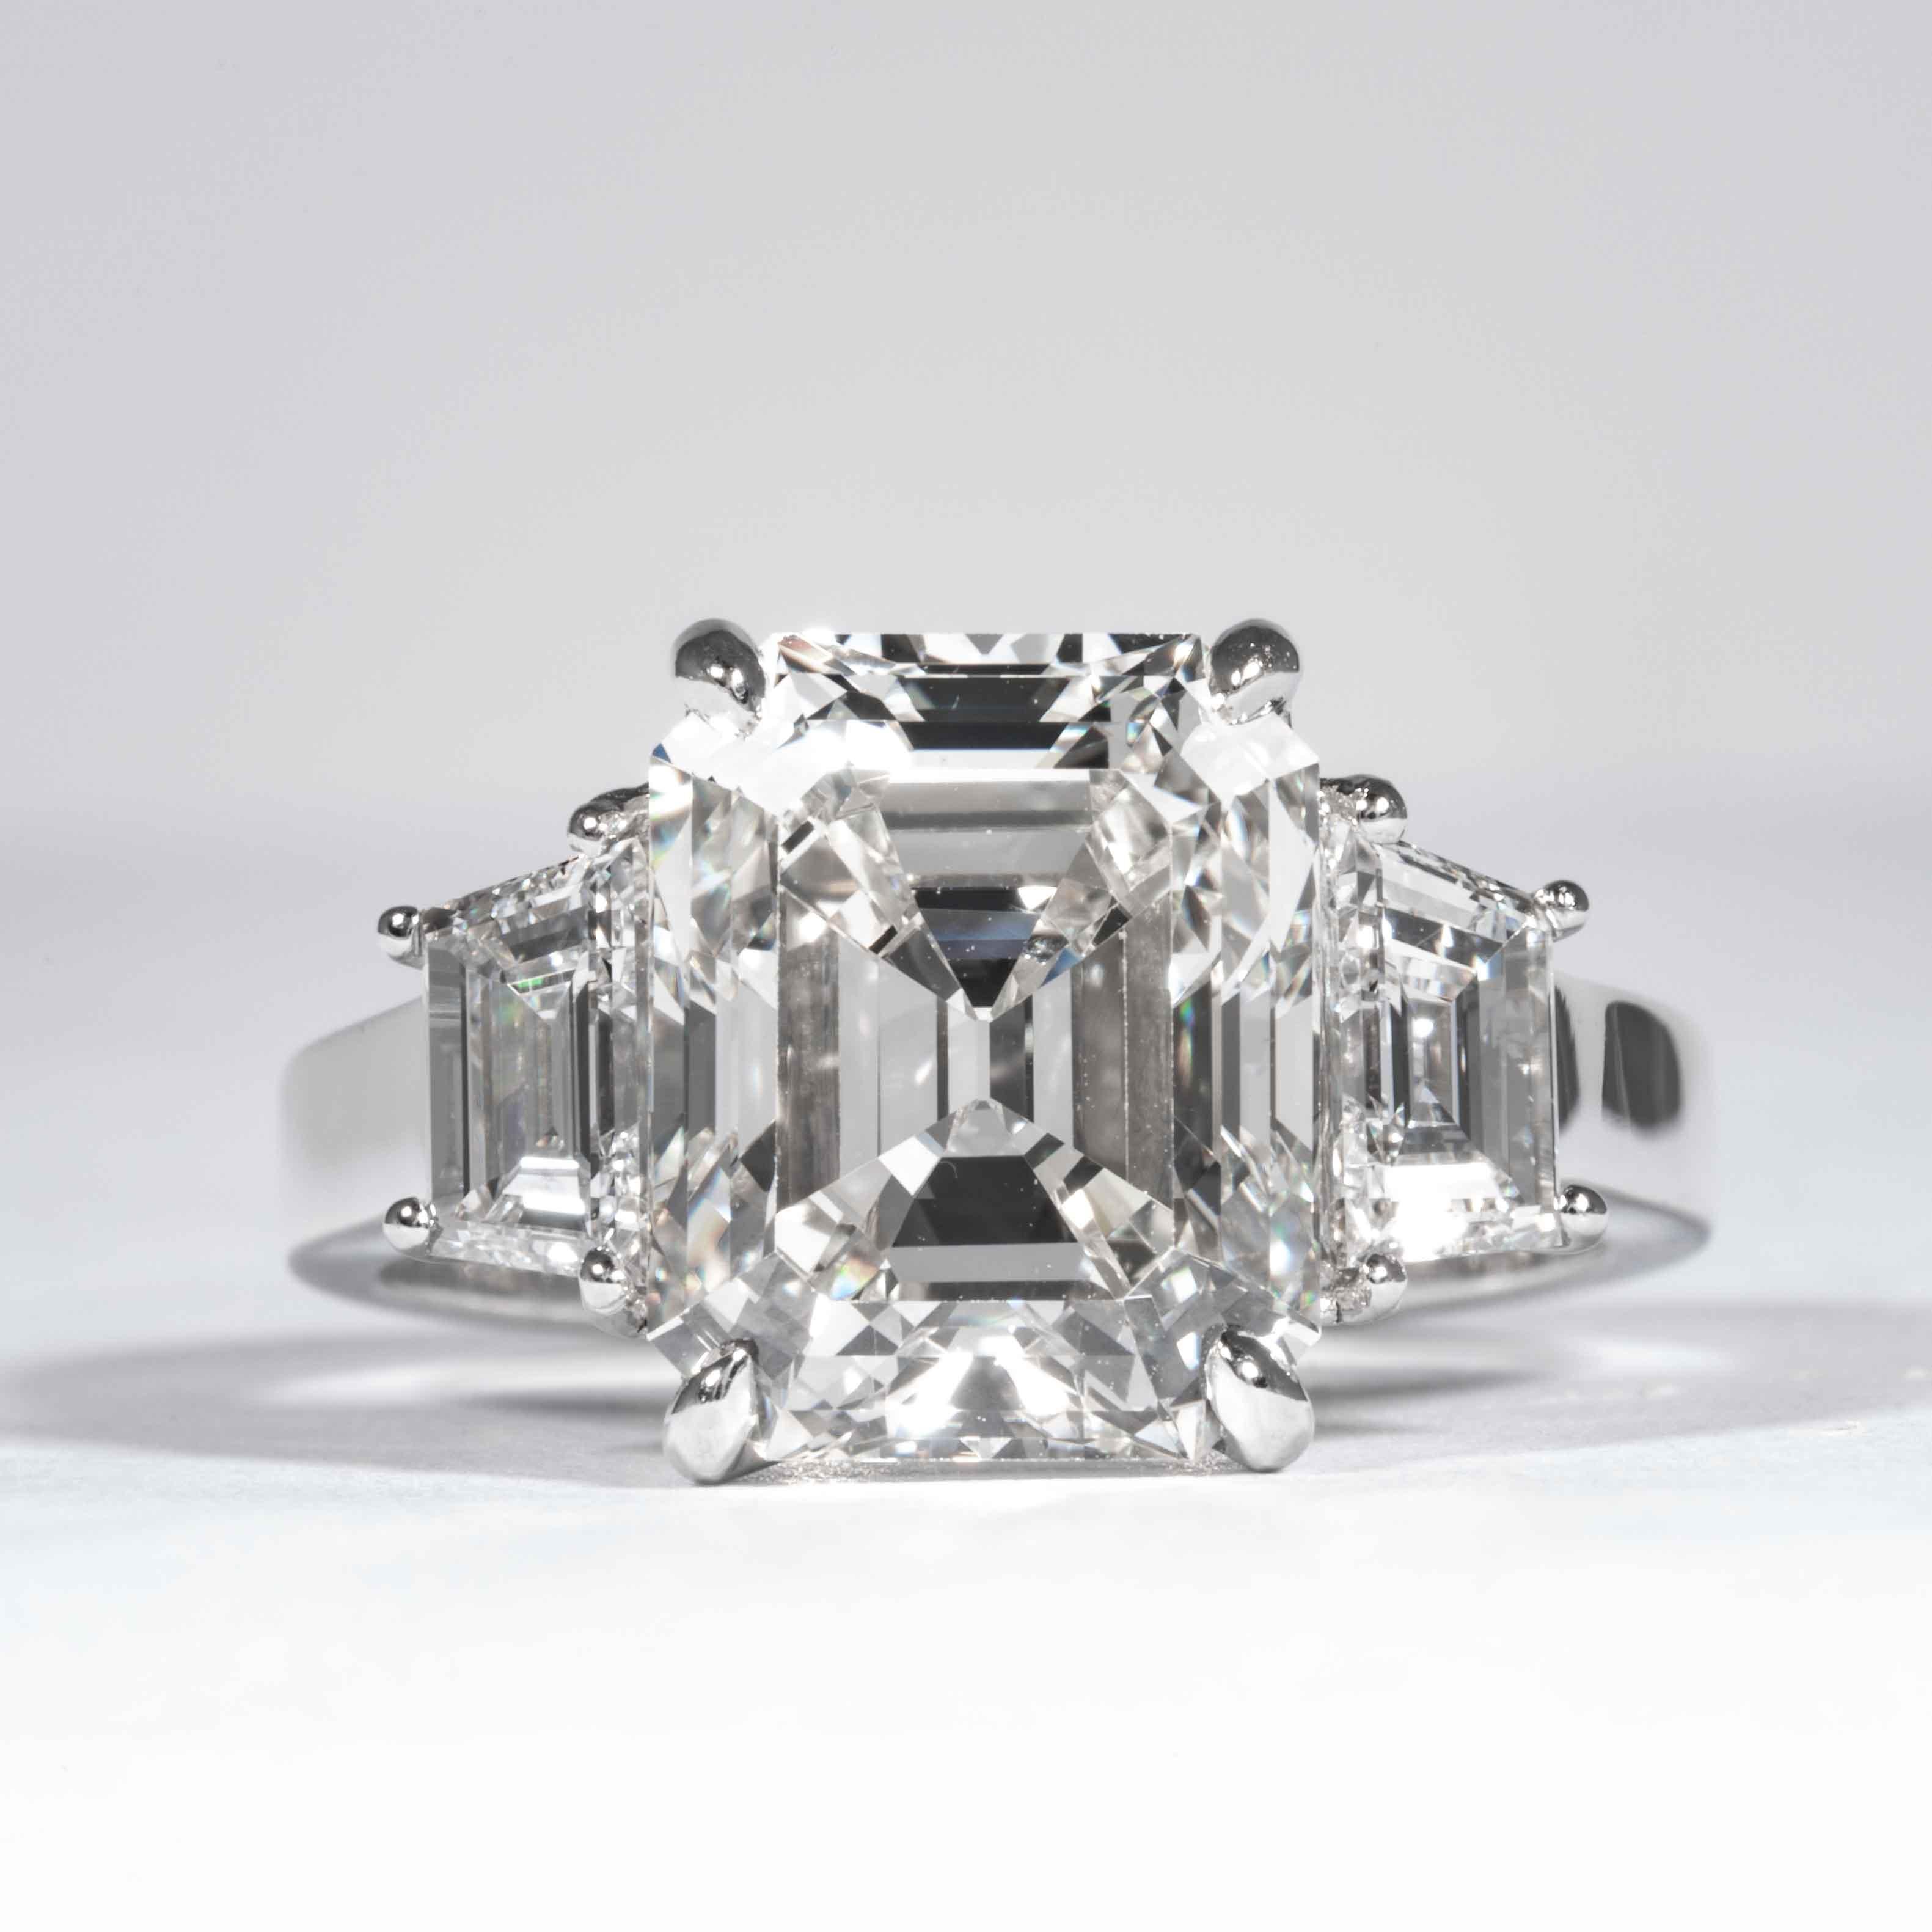 Cette bague en diamant est offerte par Shreve, Crump & Low. Ce diamant taille émeraude de 5,13 carats certifié GIA J VS2 mesurant 10,98 x 8,88 x 6,32 mm est serti sur mesure dans une bague à trois pierres en platine fabriquée à la main par Shreve,